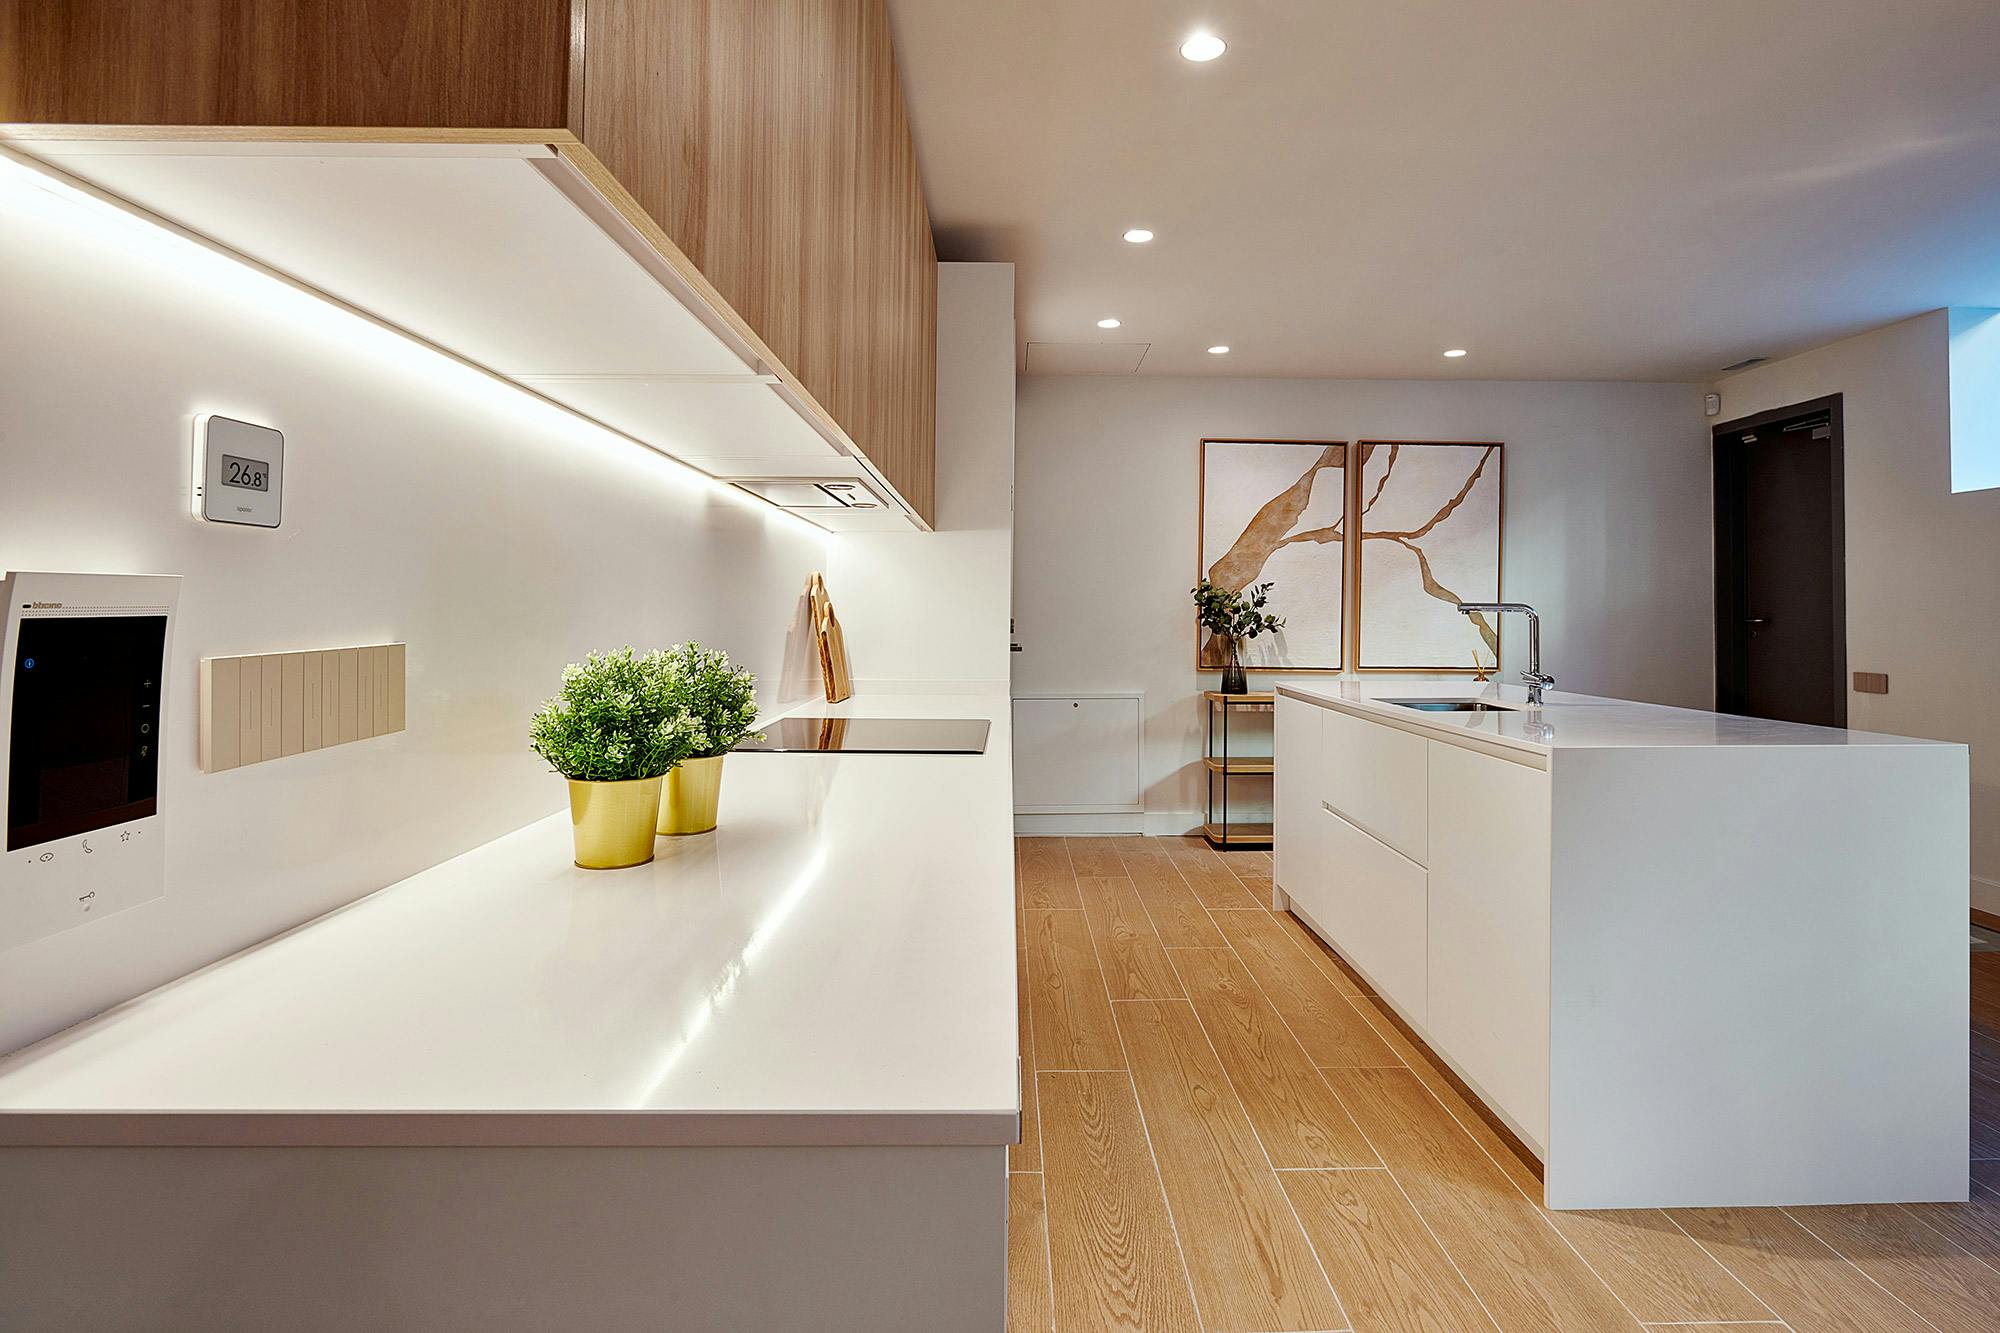 Numero immagine 42 della sezione corrente di Cosentino, the star of the new functional, modern and sustainable house in the AEDAS Homes showroom in Madrid di Cosentino Italia